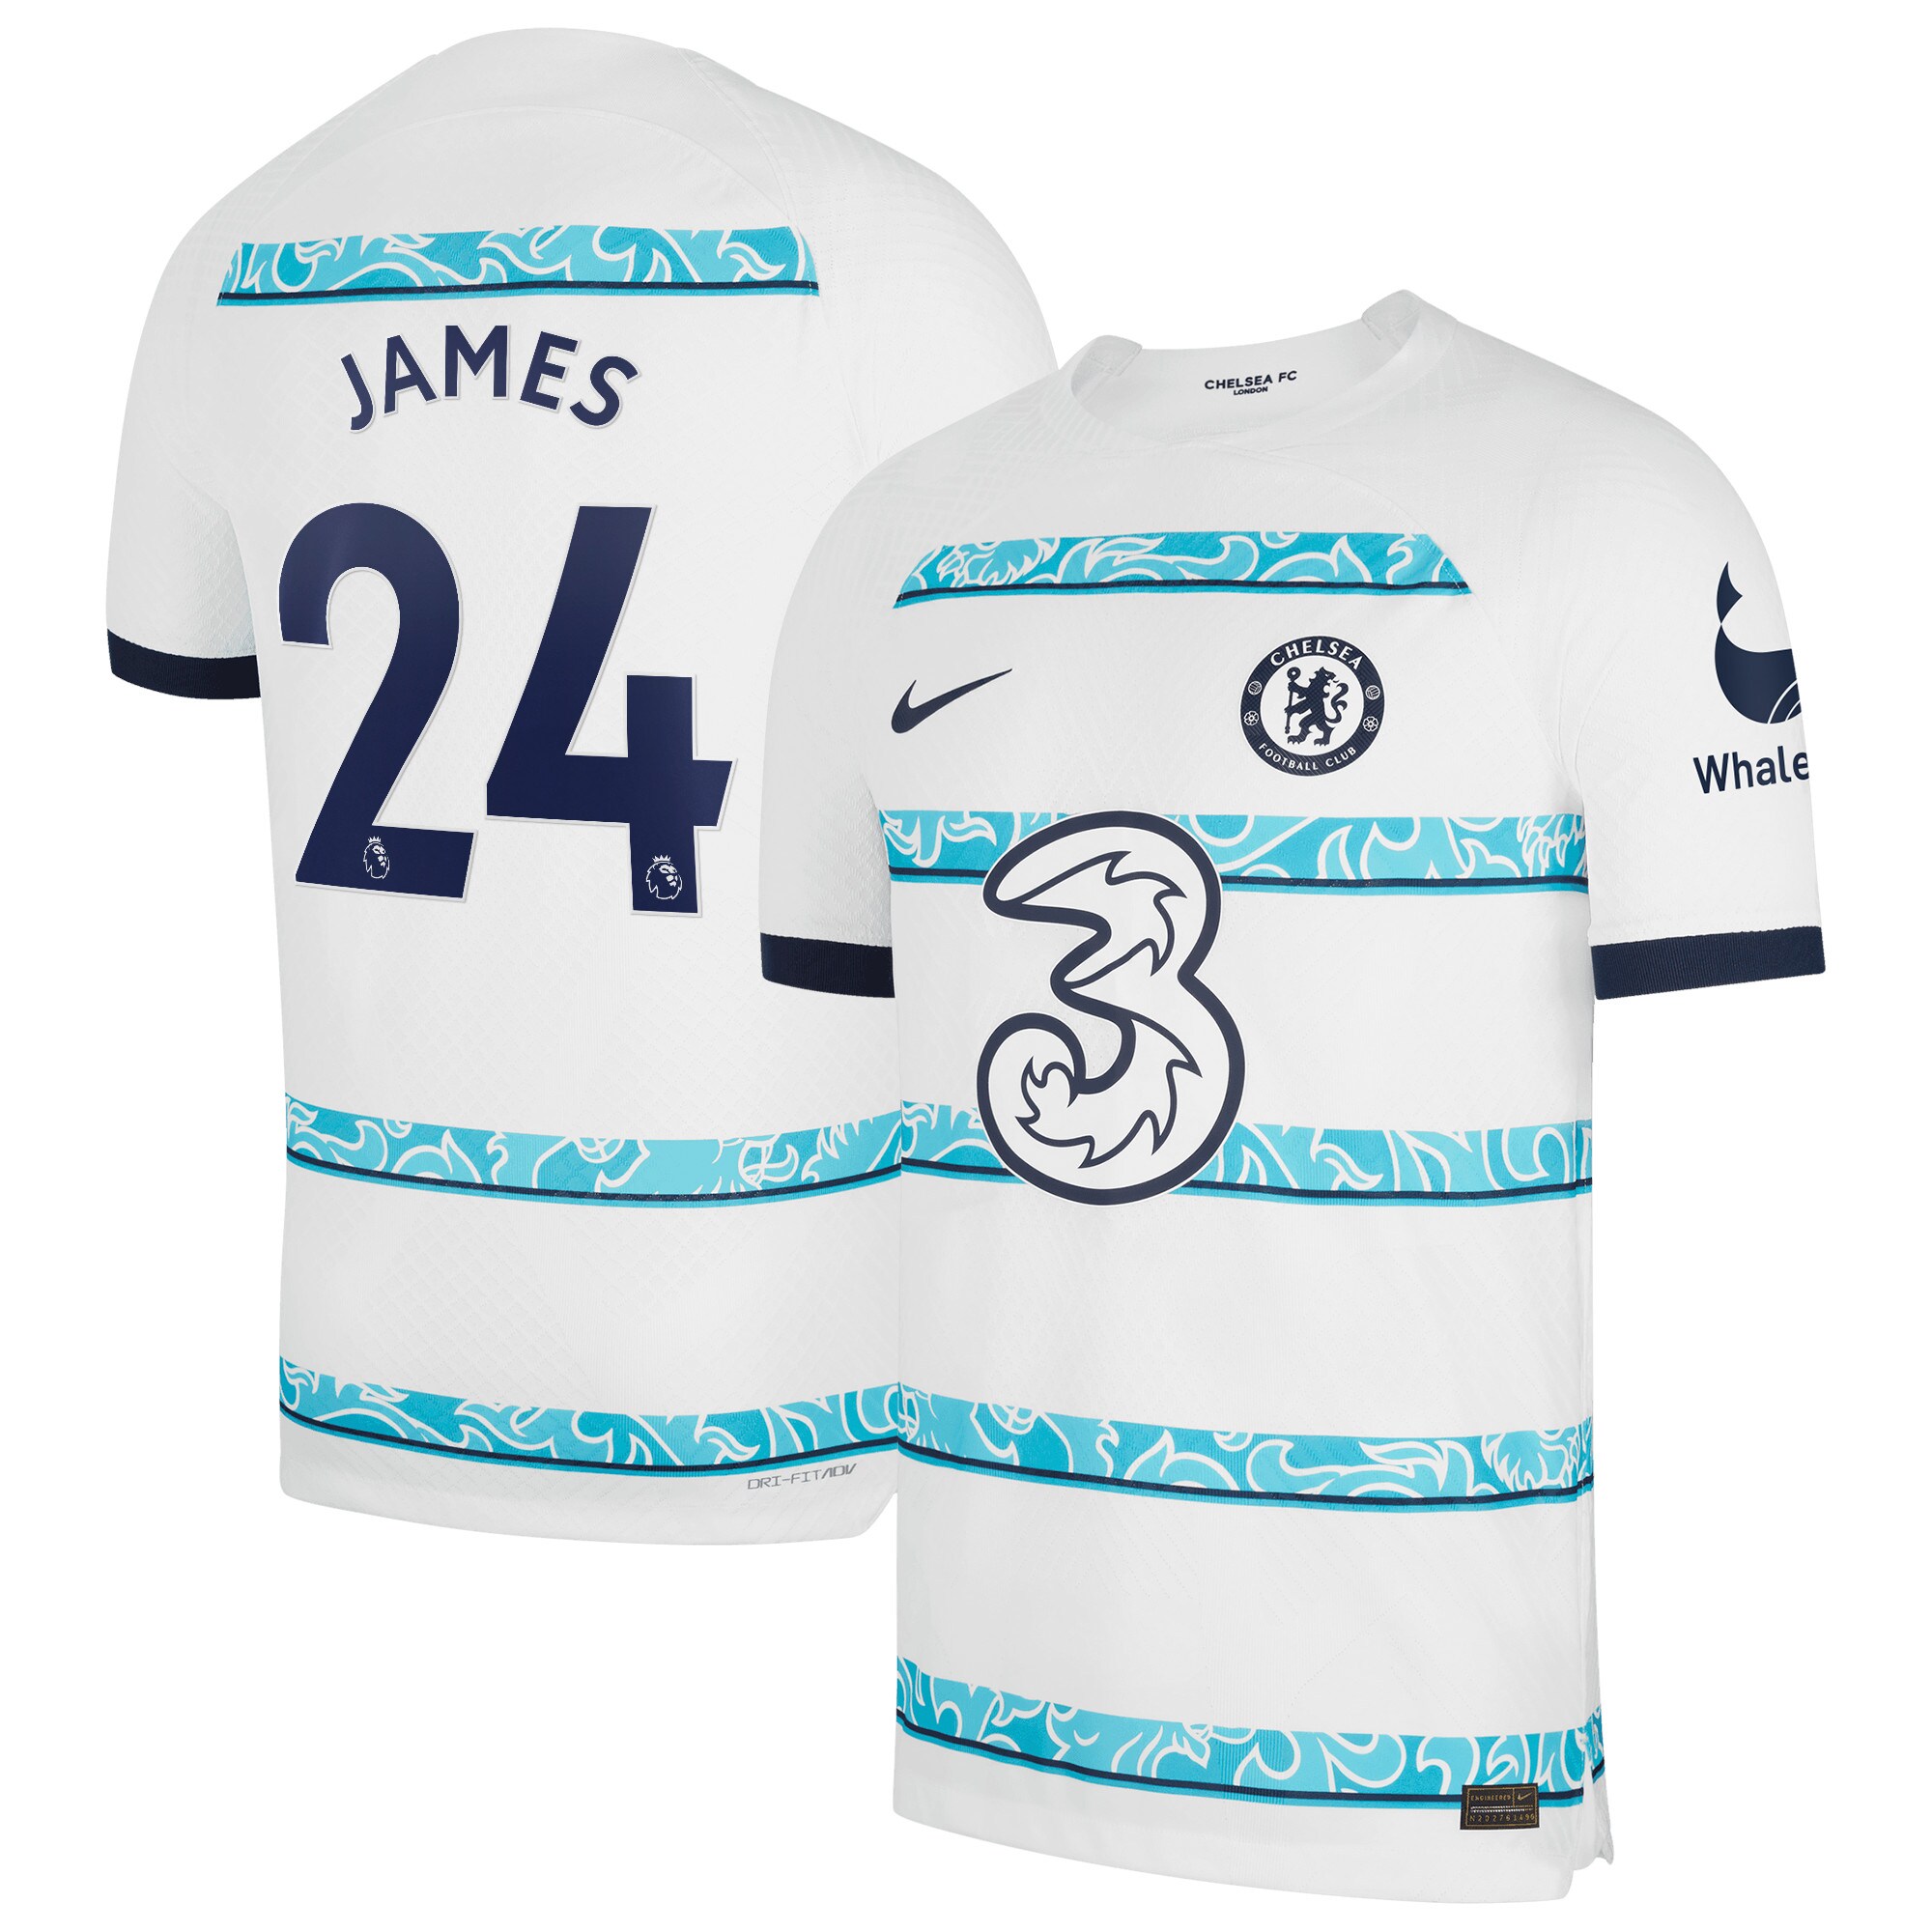 Chelsea Away Vapor Match Shirt 2022-23 with James 24 printing